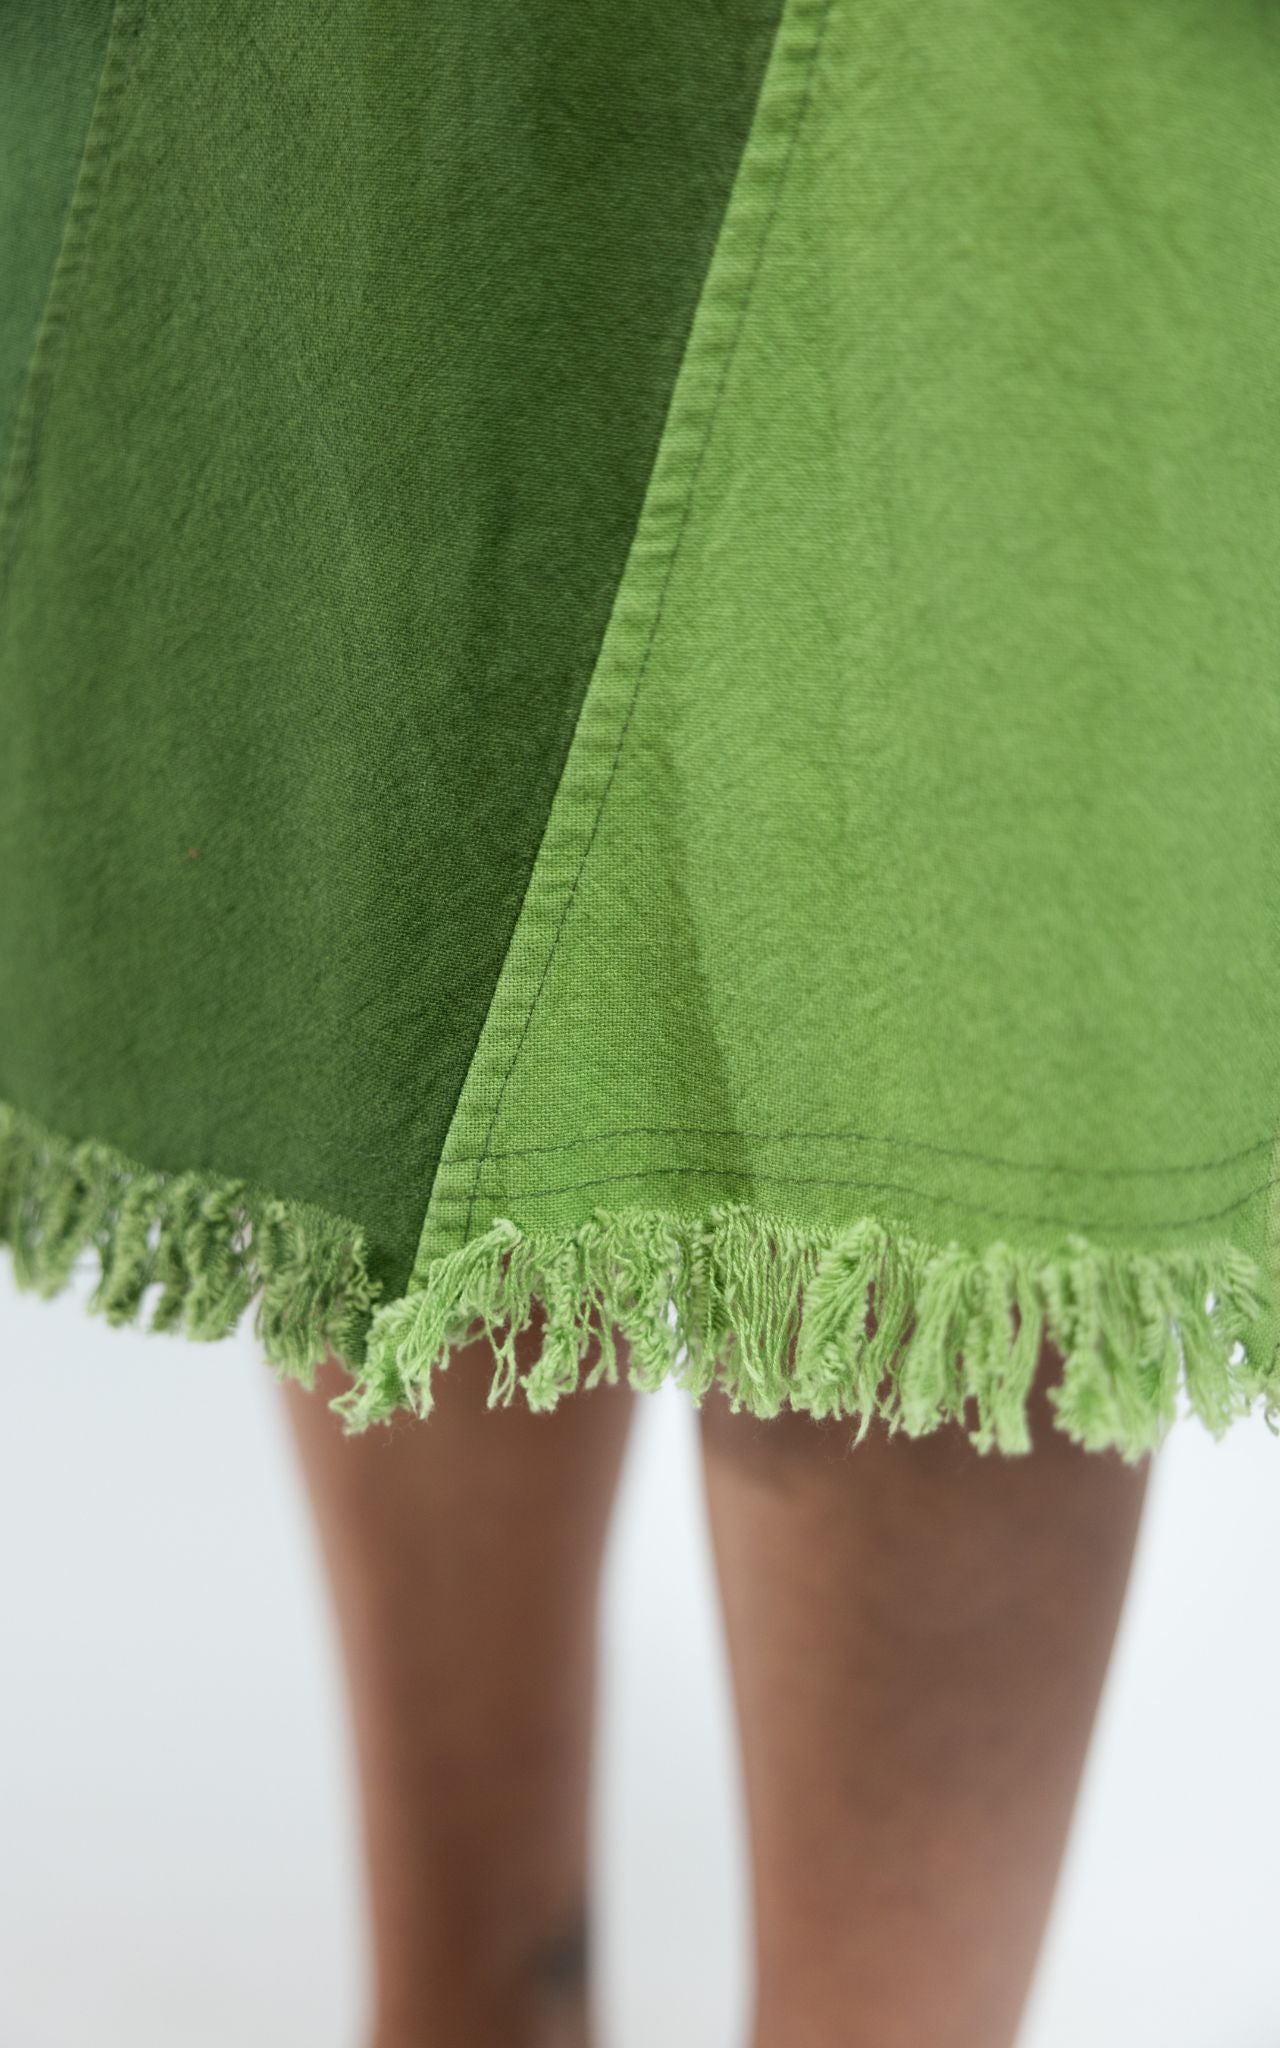 Surya Australia Cotton 'Freya' Skirt made in Nepal - Green